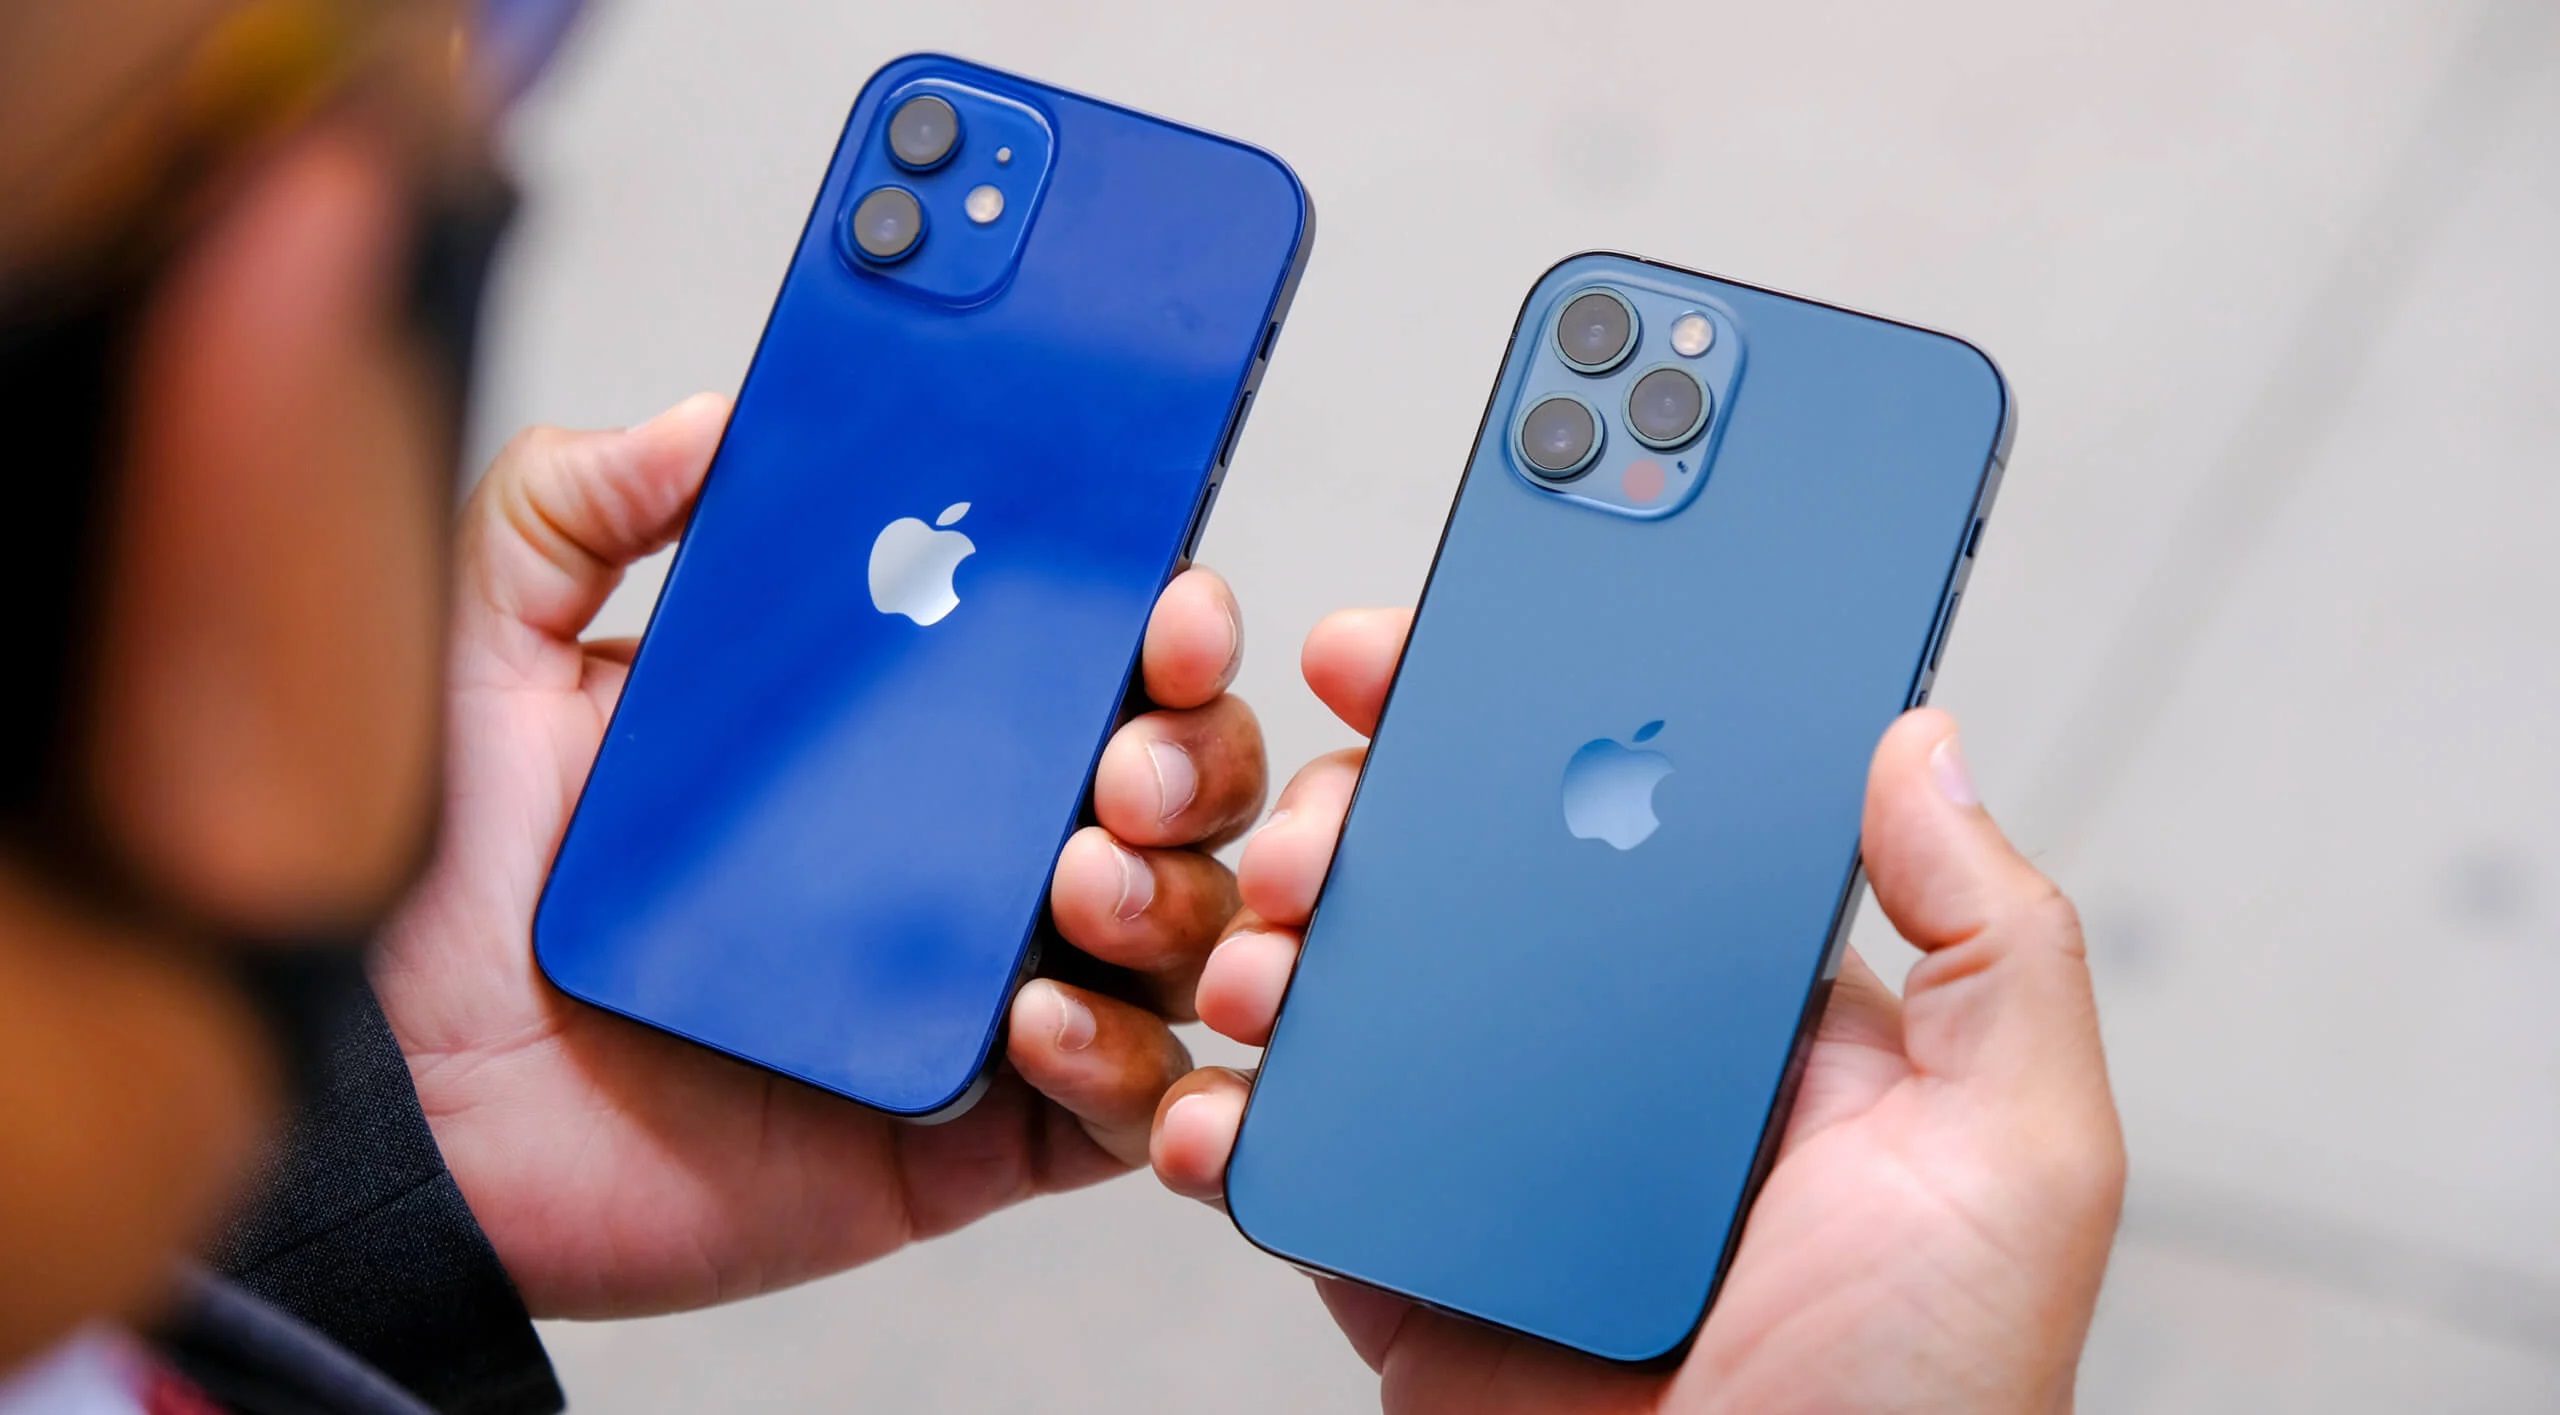 Apple räumt schwerwiegenden Defekt bei iPhone 12 und iPhone 12 Pro ein und verspricht, Smartphones kostenlos zu reparieren